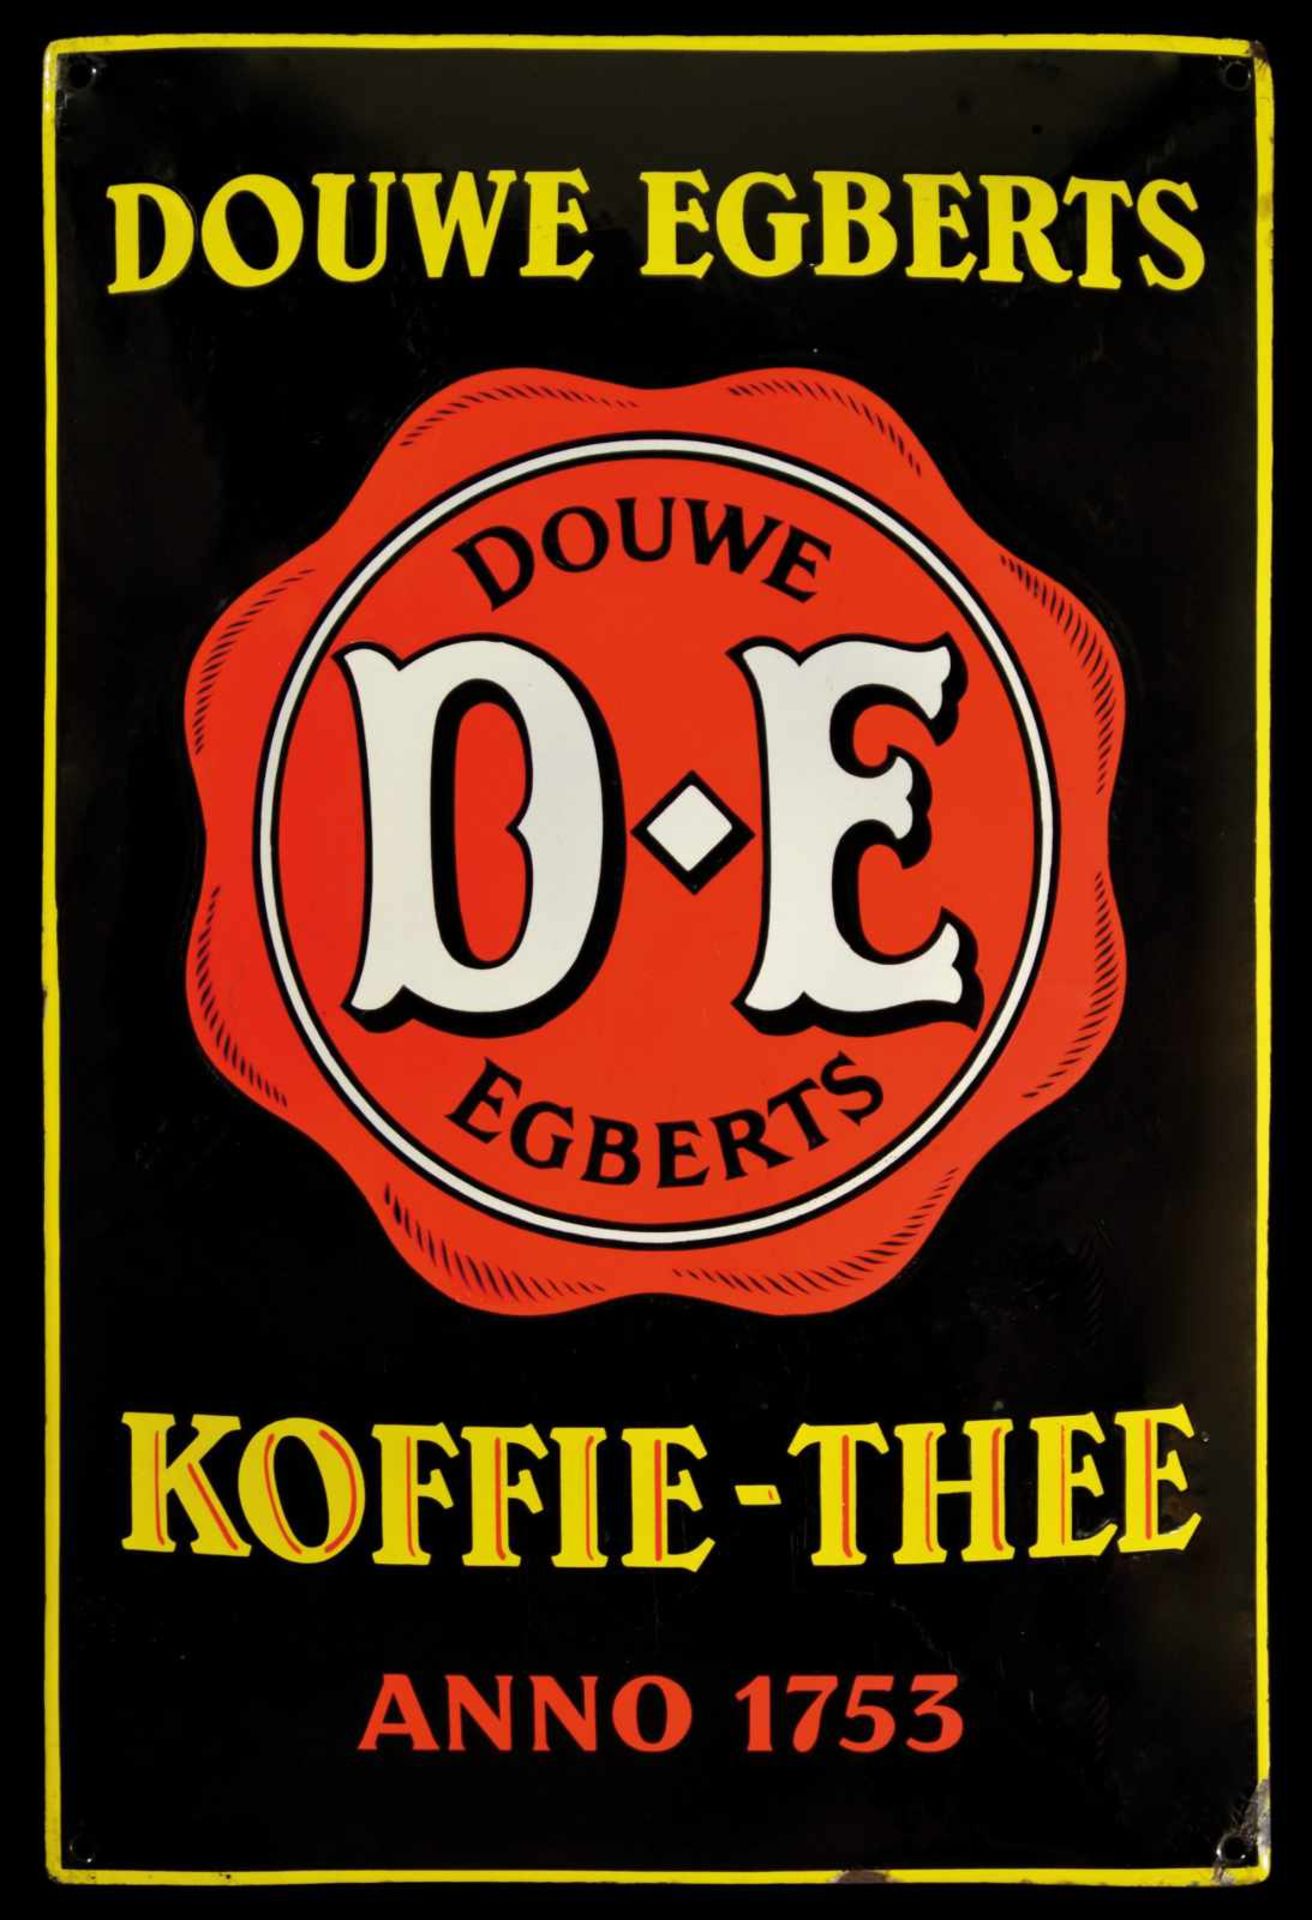 DOUWE EGBERTS KOFFIE-THEE (1-2) Emailschild, gewölbt, schabloniert, Niederlande 30er Jahre, 50 x